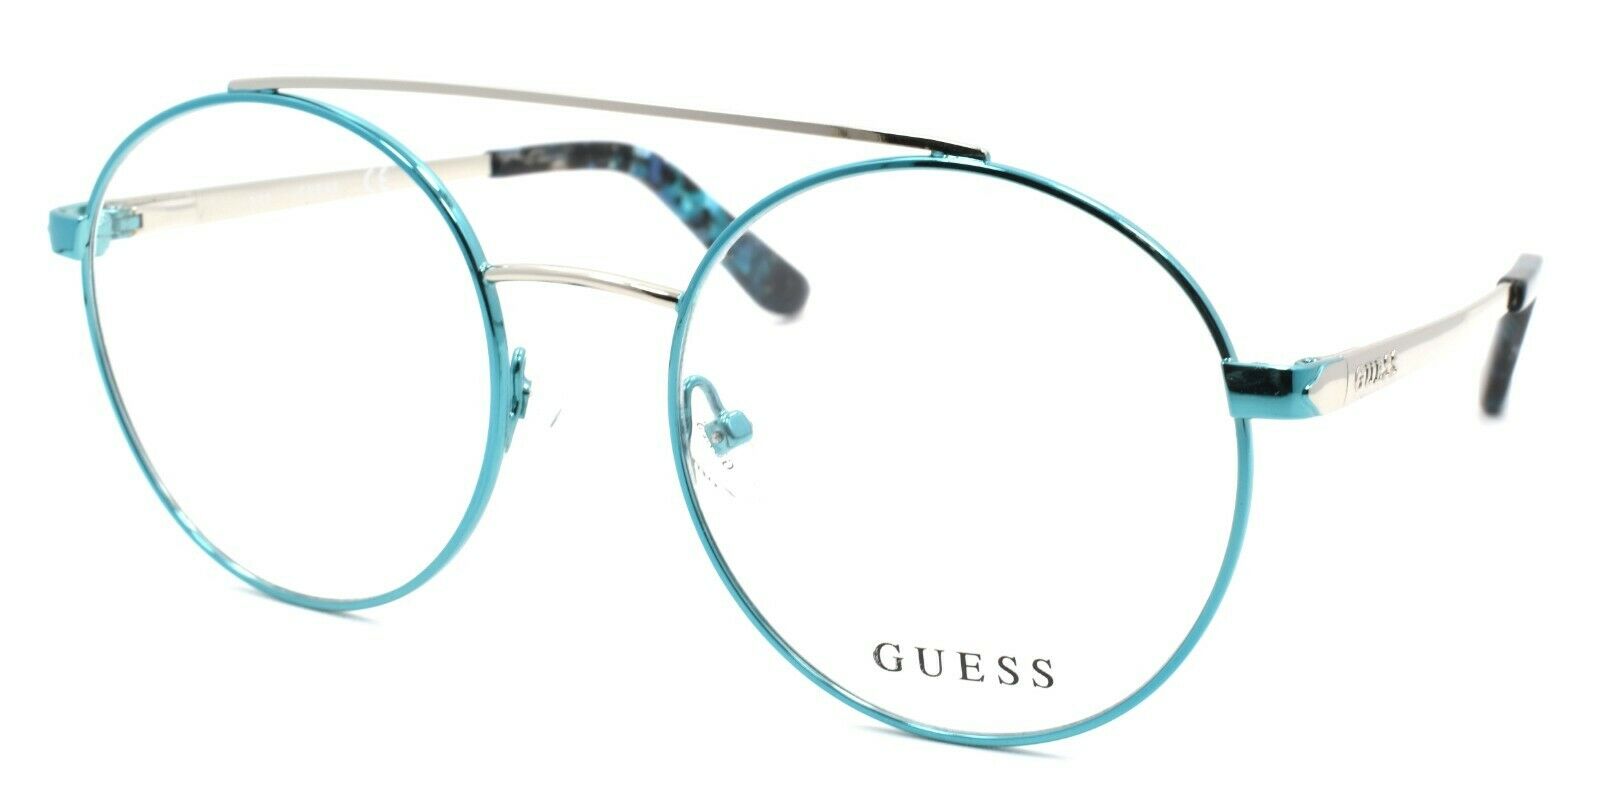 1-GUESS GU2714 084 Women's Eyeglasses Frames Aviator 50-18-135 Shiny Light Blue-889214025524-IKSpecs